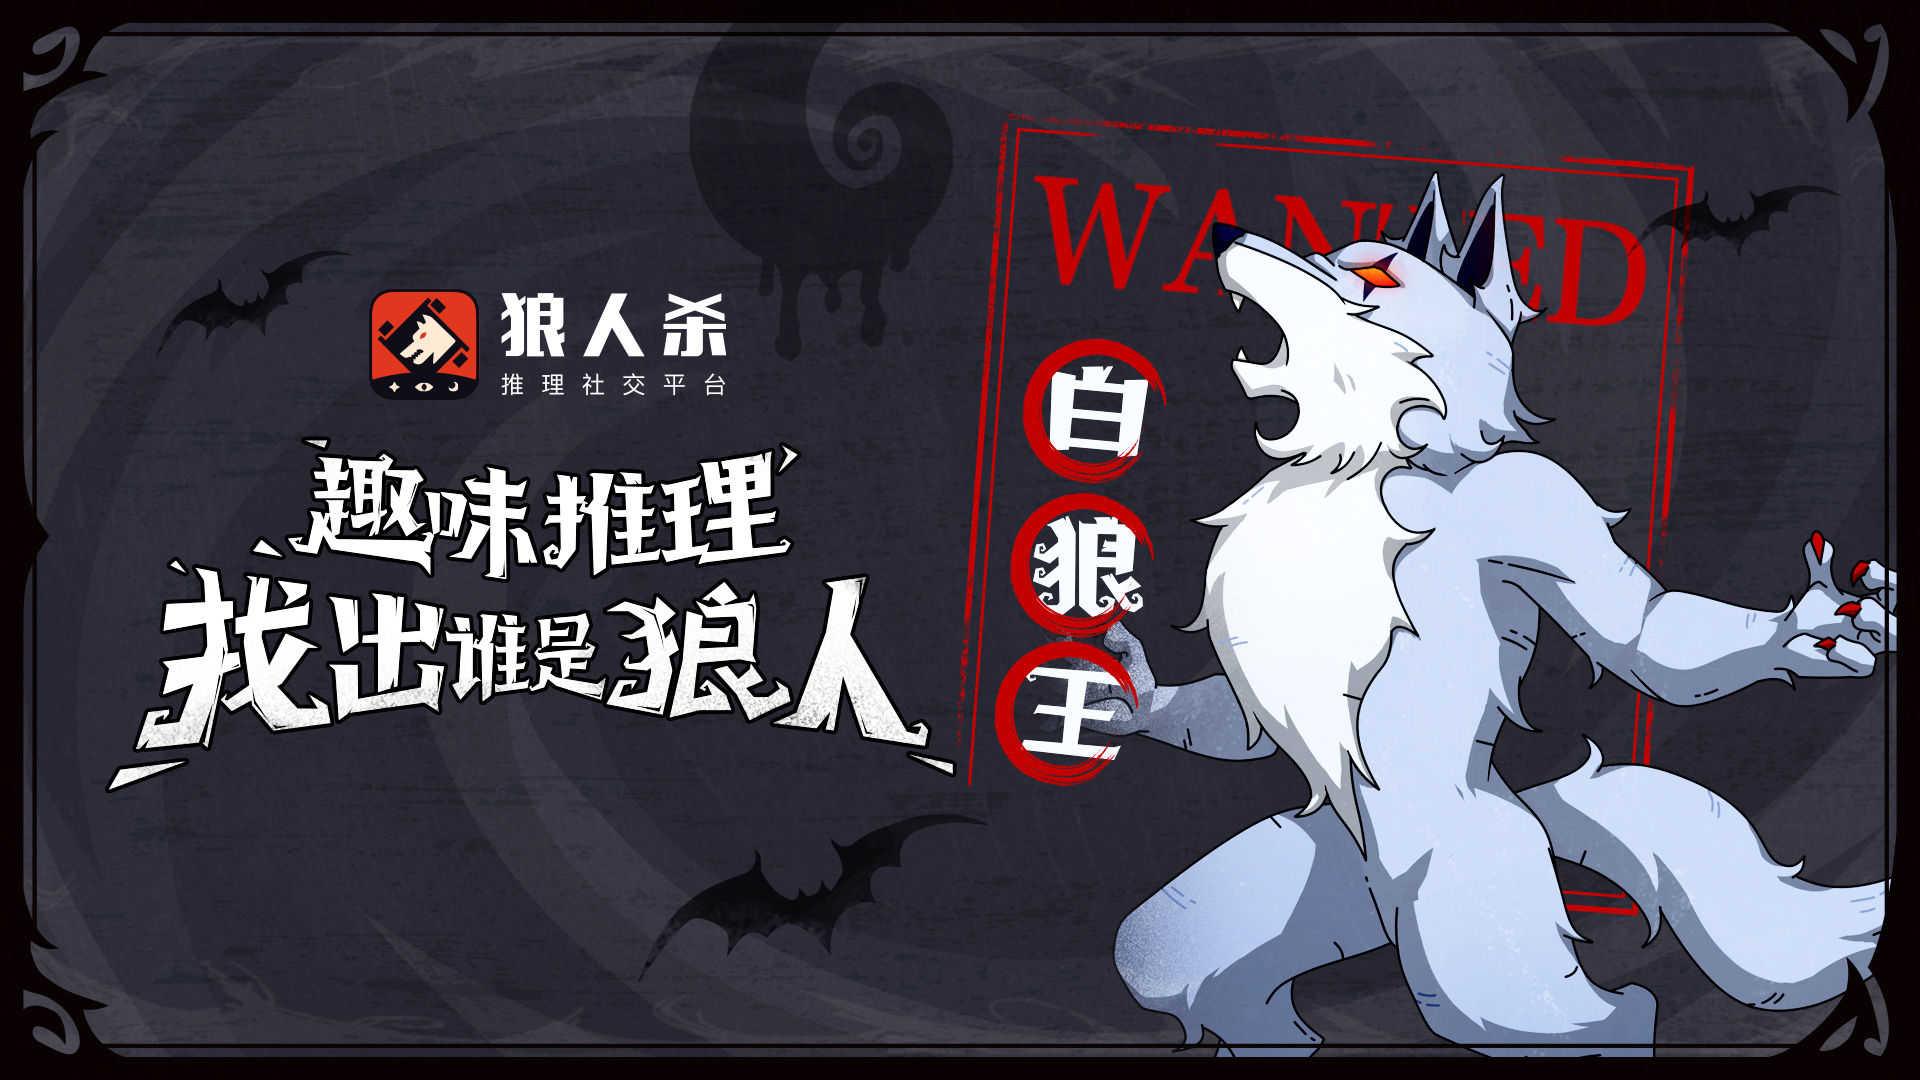 《狼人杀》白狼王角色攻略: 策略性的狩猎与游戏操作